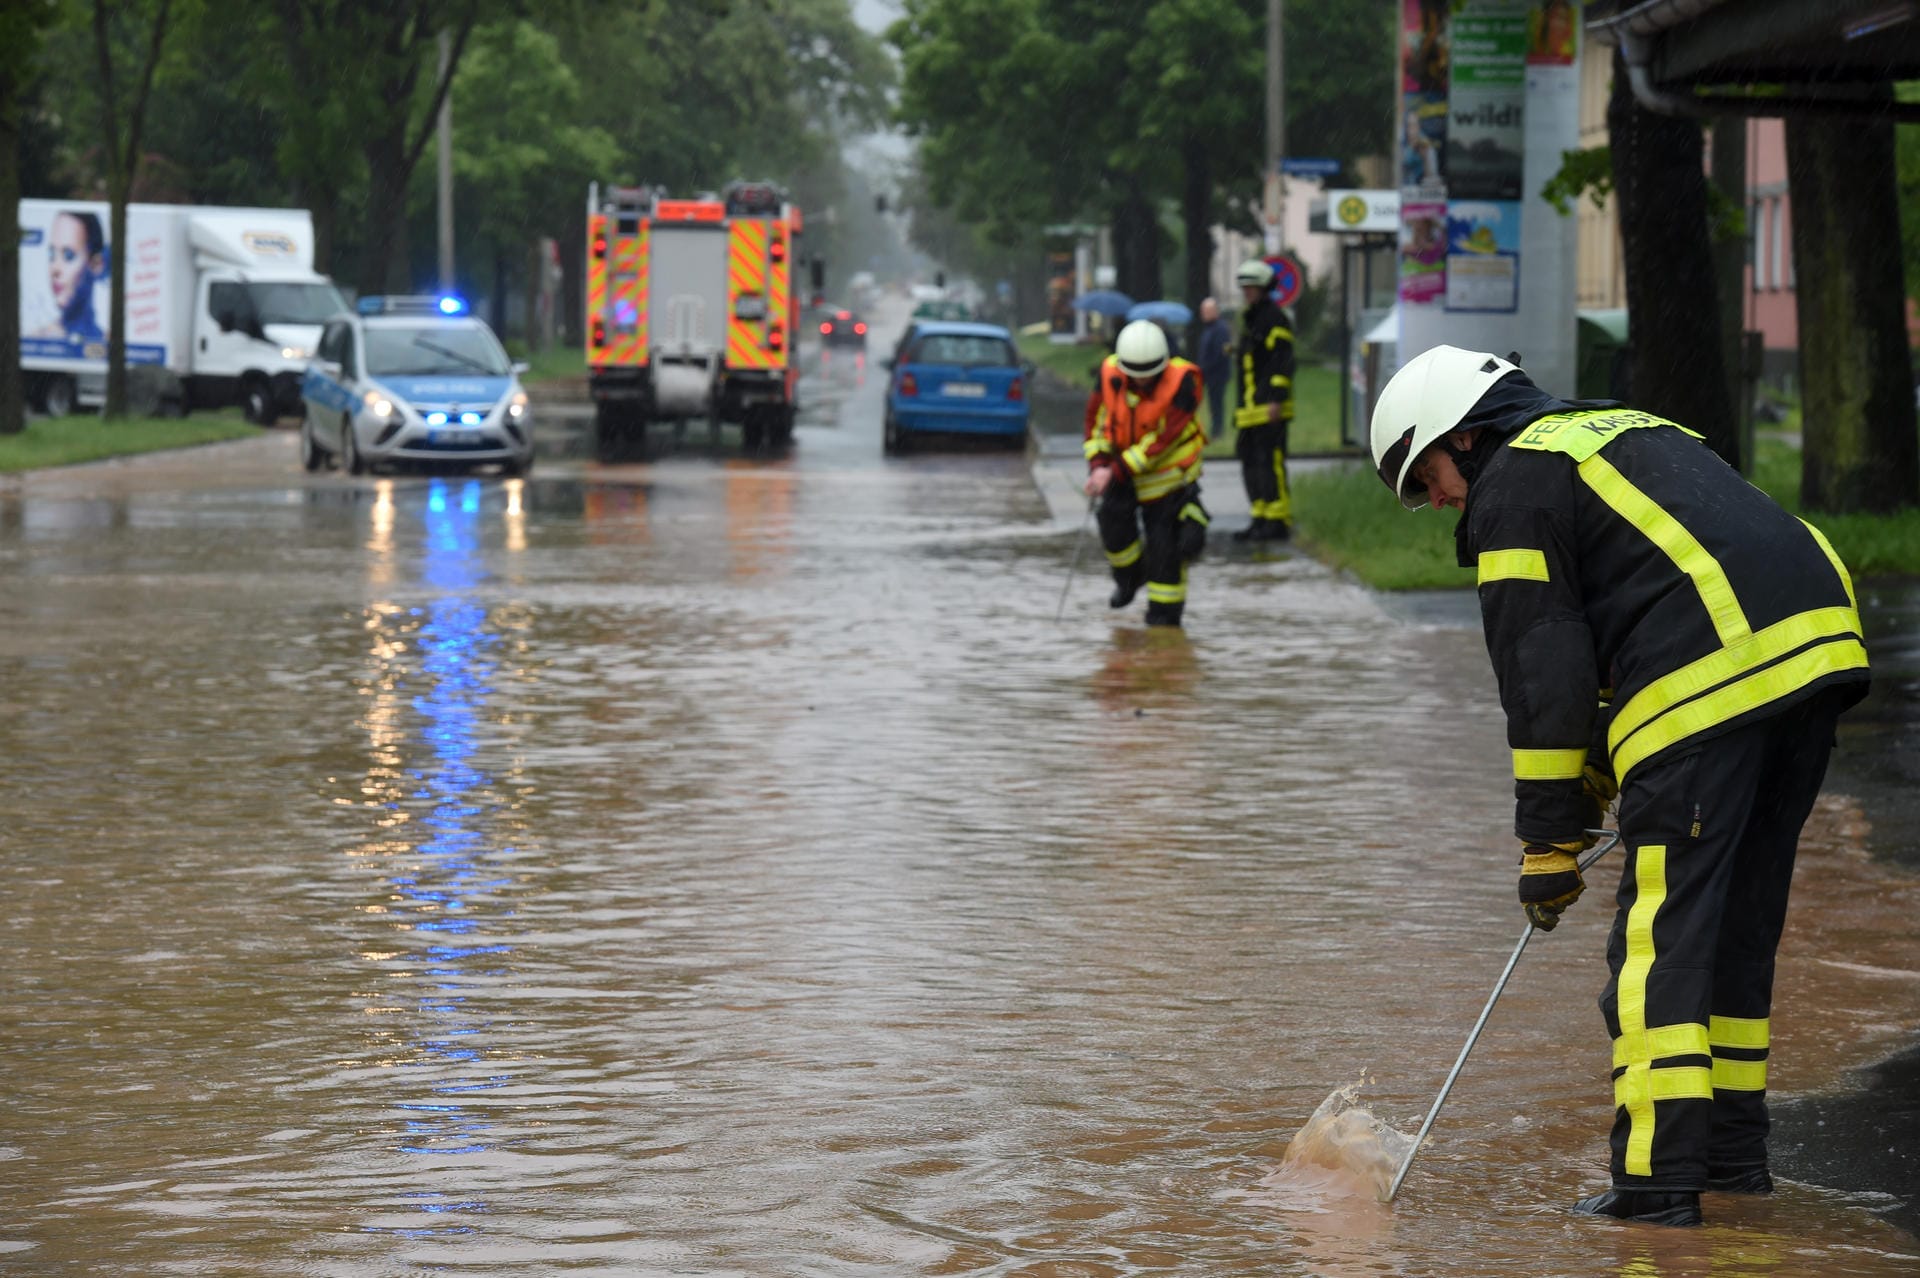 Kassel am Dienstag: Feuerwehrleute suchen mit Eisenstangen in einer überfluteten Straße nach dem Gullydeckel. Schwere Regenfälle haben die Bäche im Kasseler Osten zum Überlaufen gebracht.